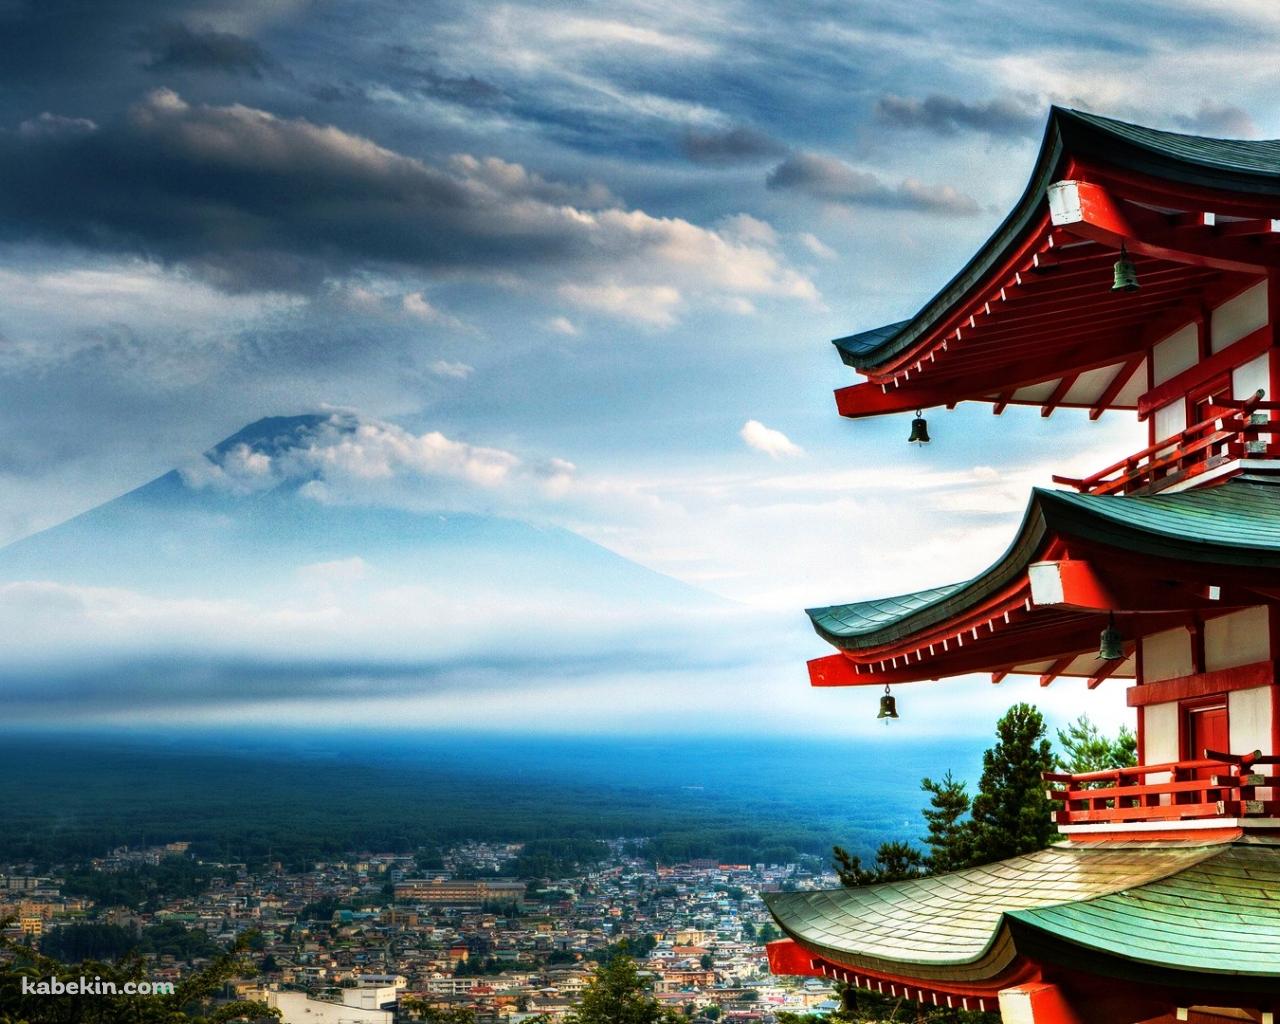 富士山が見える風景の壁紙(1280px x 1024px) 高画質 PC・デスクトップ用